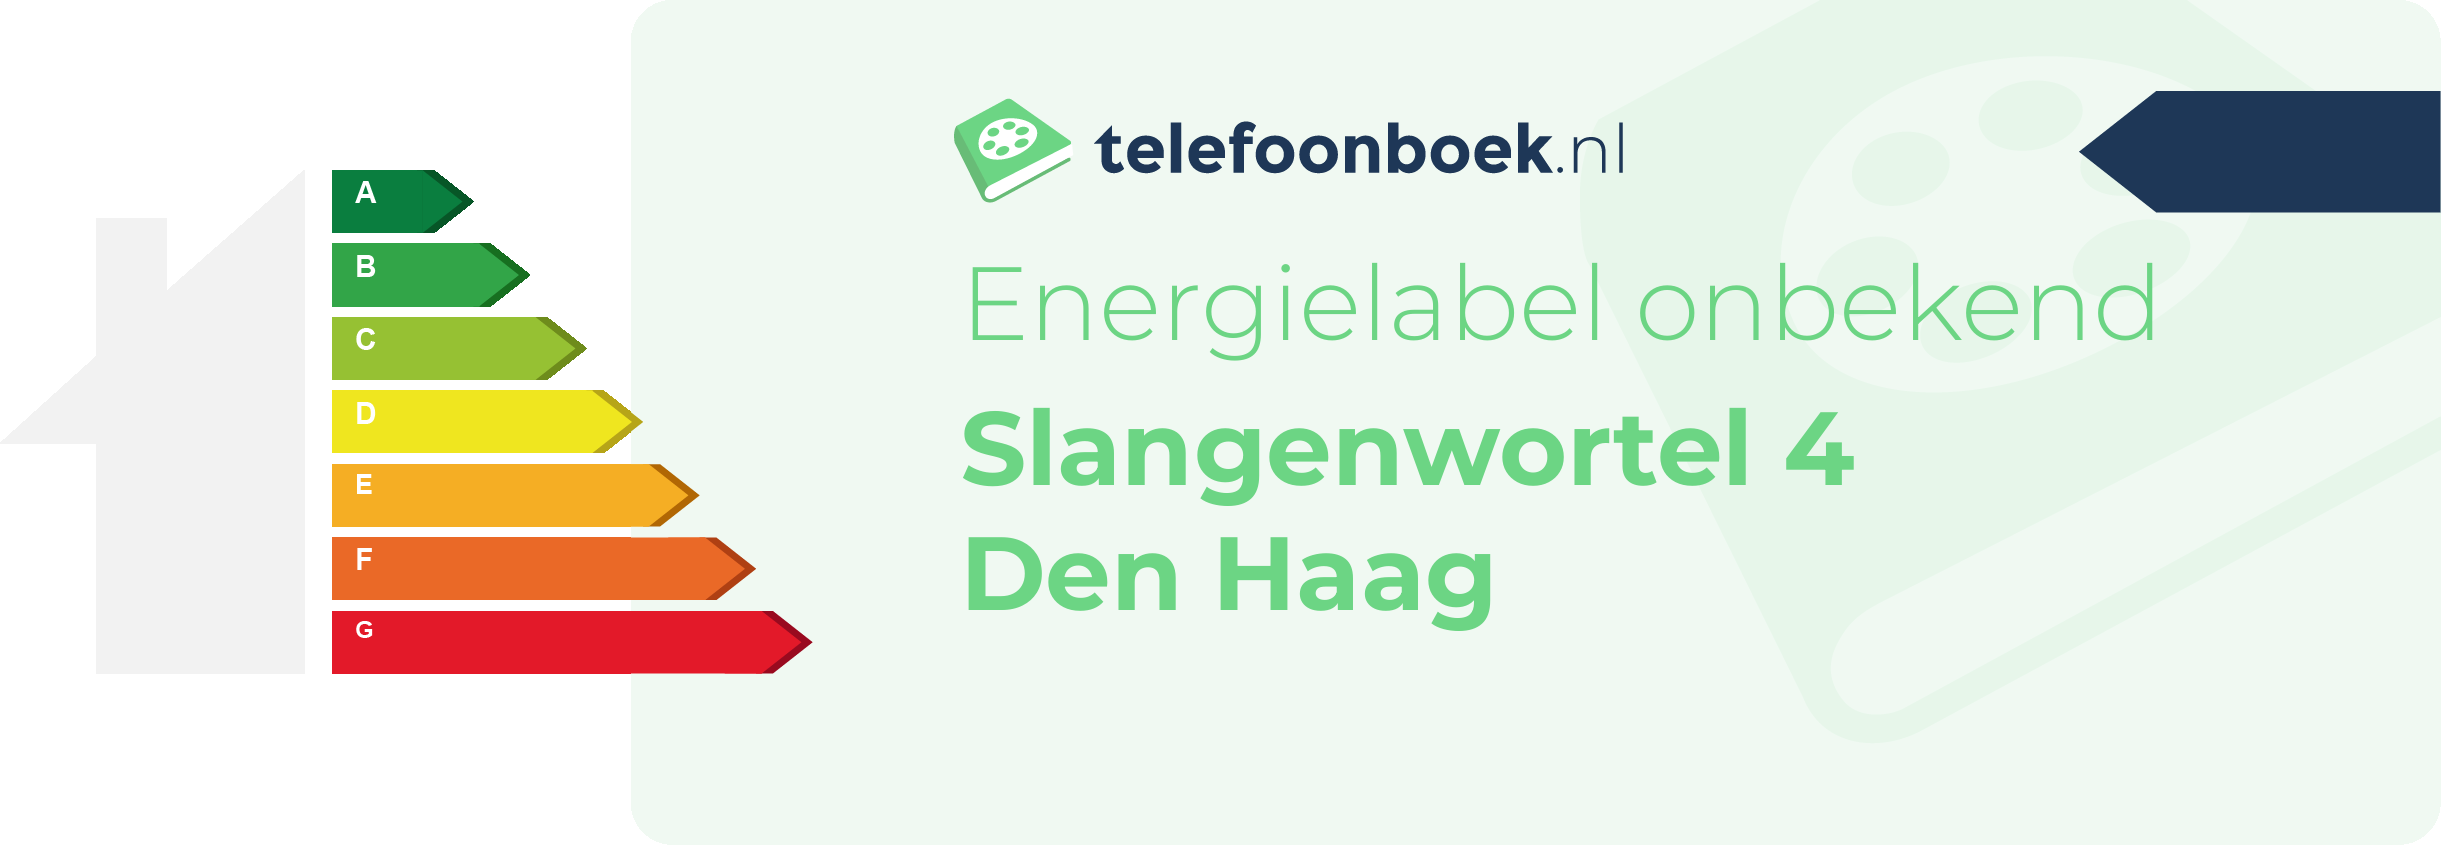 Energielabel Slangenwortel 4 Den Haag